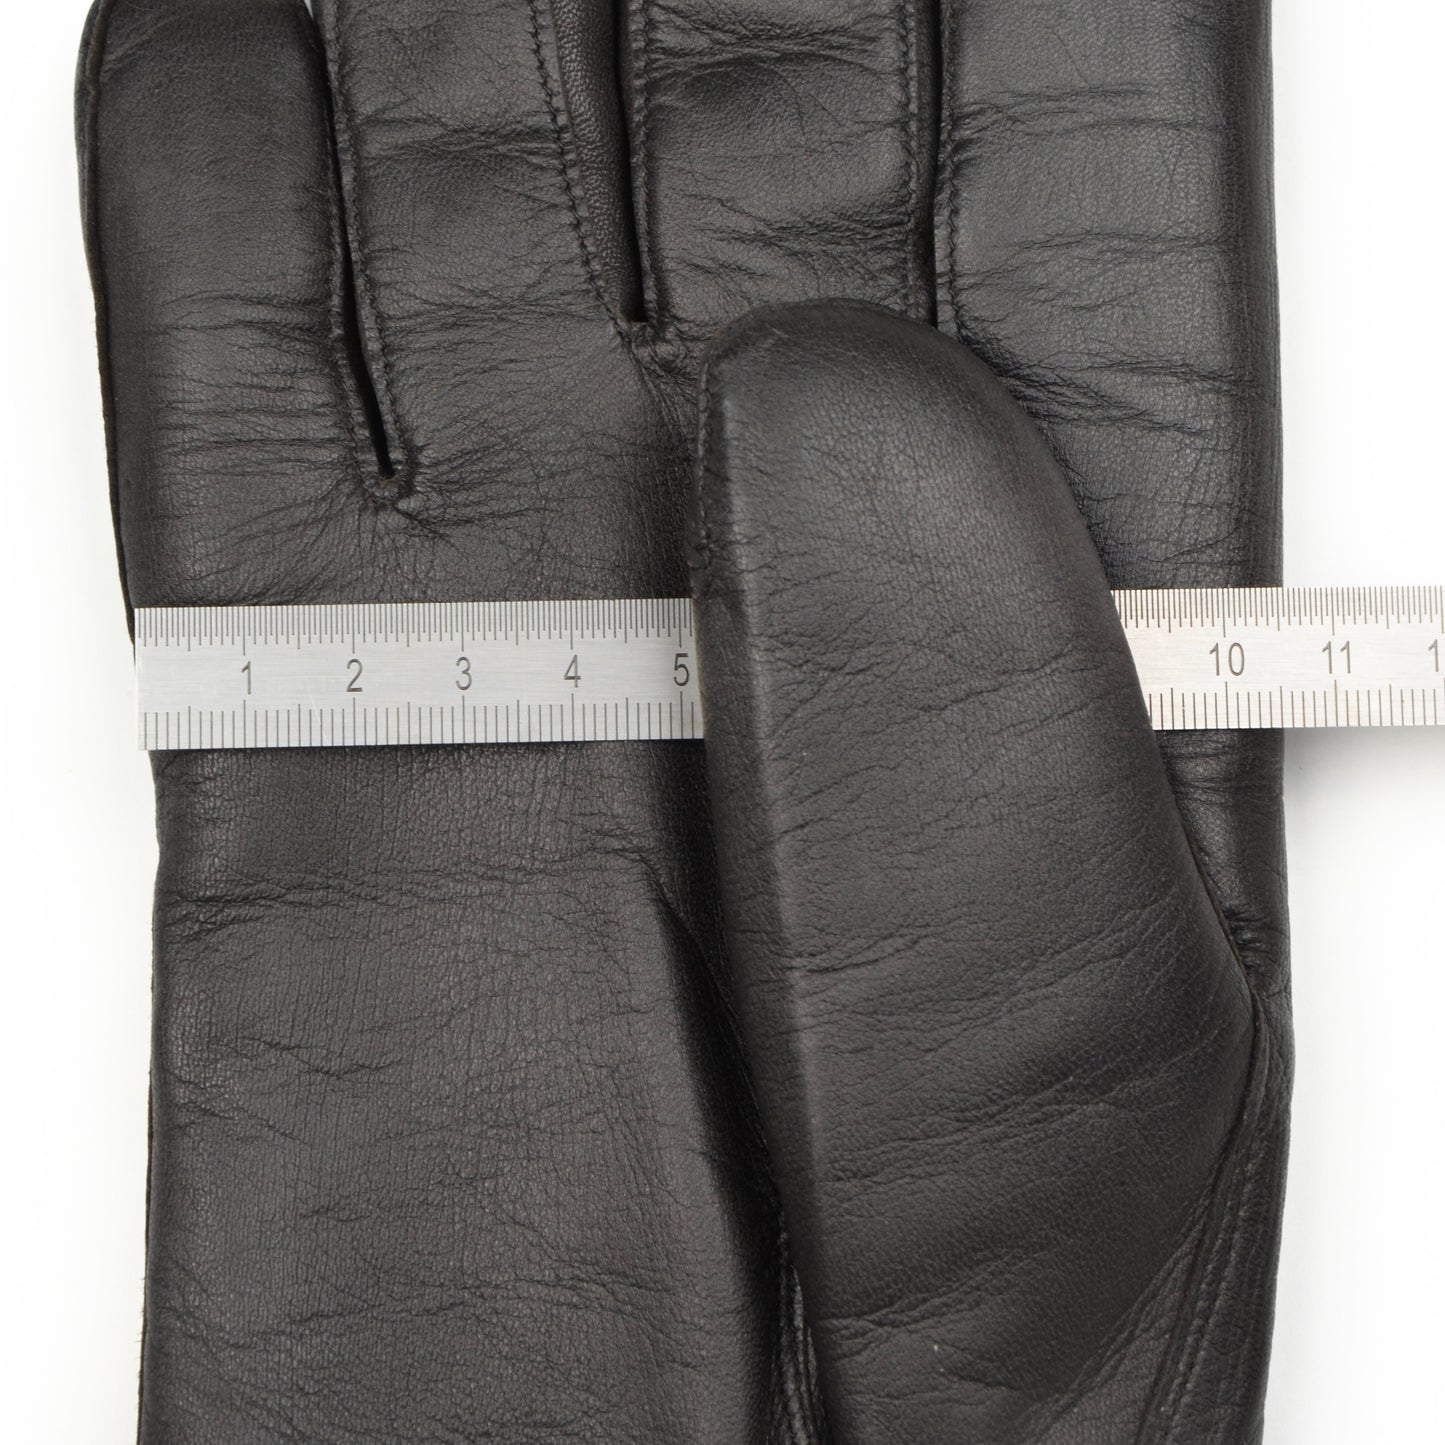 Lammnappa-Handschuhe mit Lammfellfutter Größe 8 1/2 - Schwarz